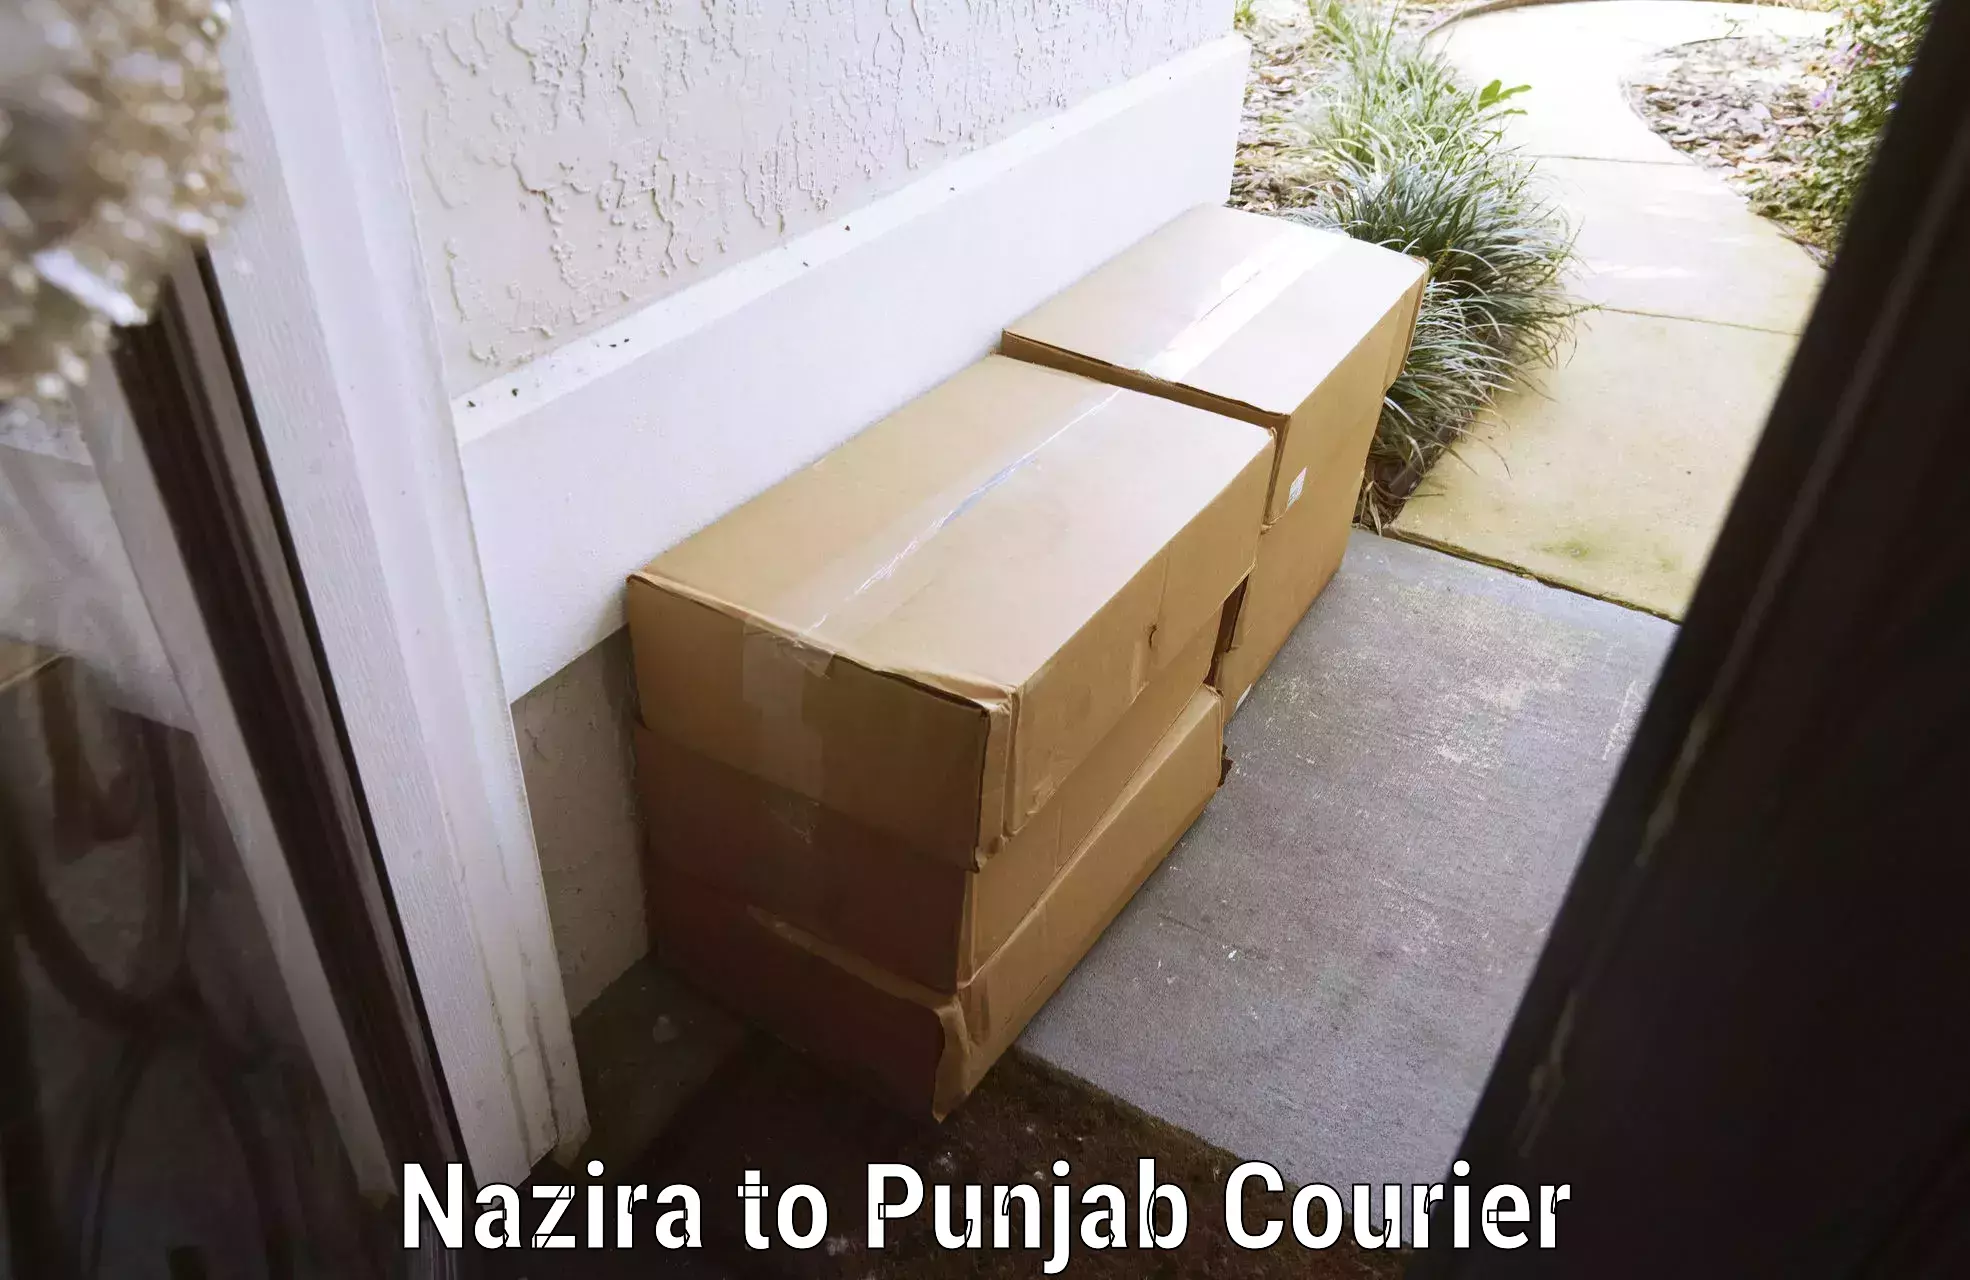 Baggage transport management Nazira to Punjab